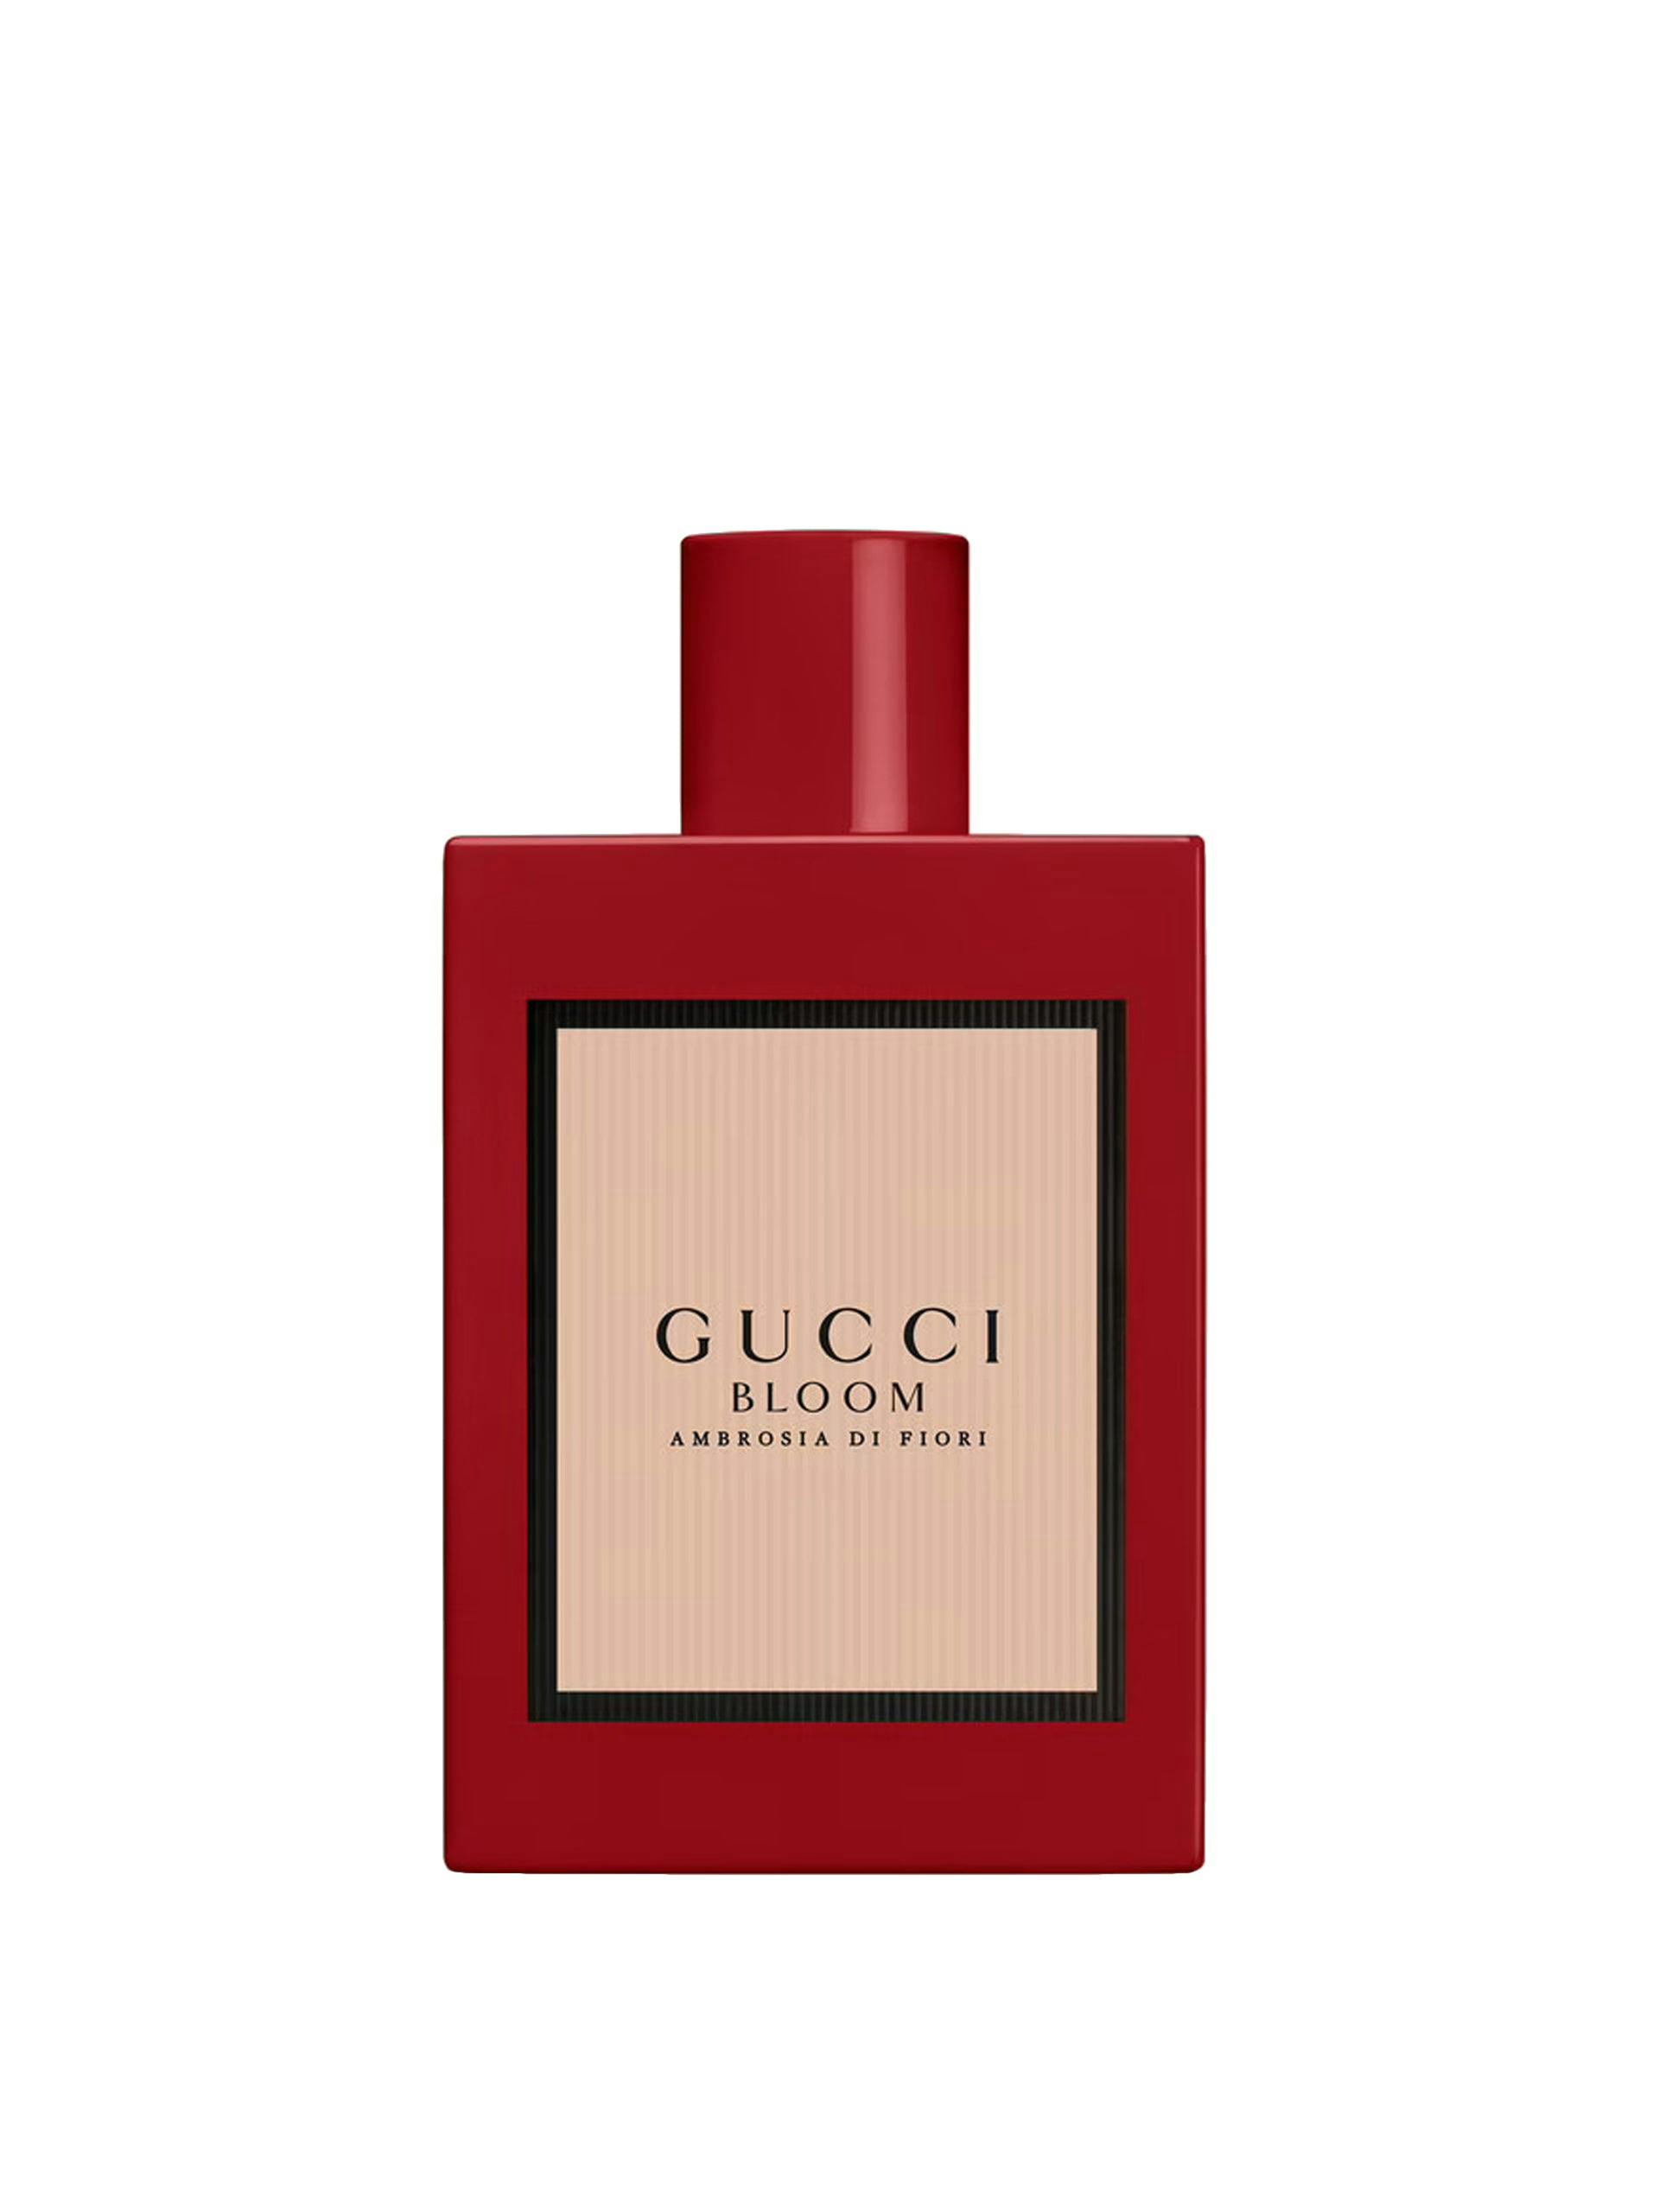 Gucci Bloom ambrosia di fiori eau de parfum